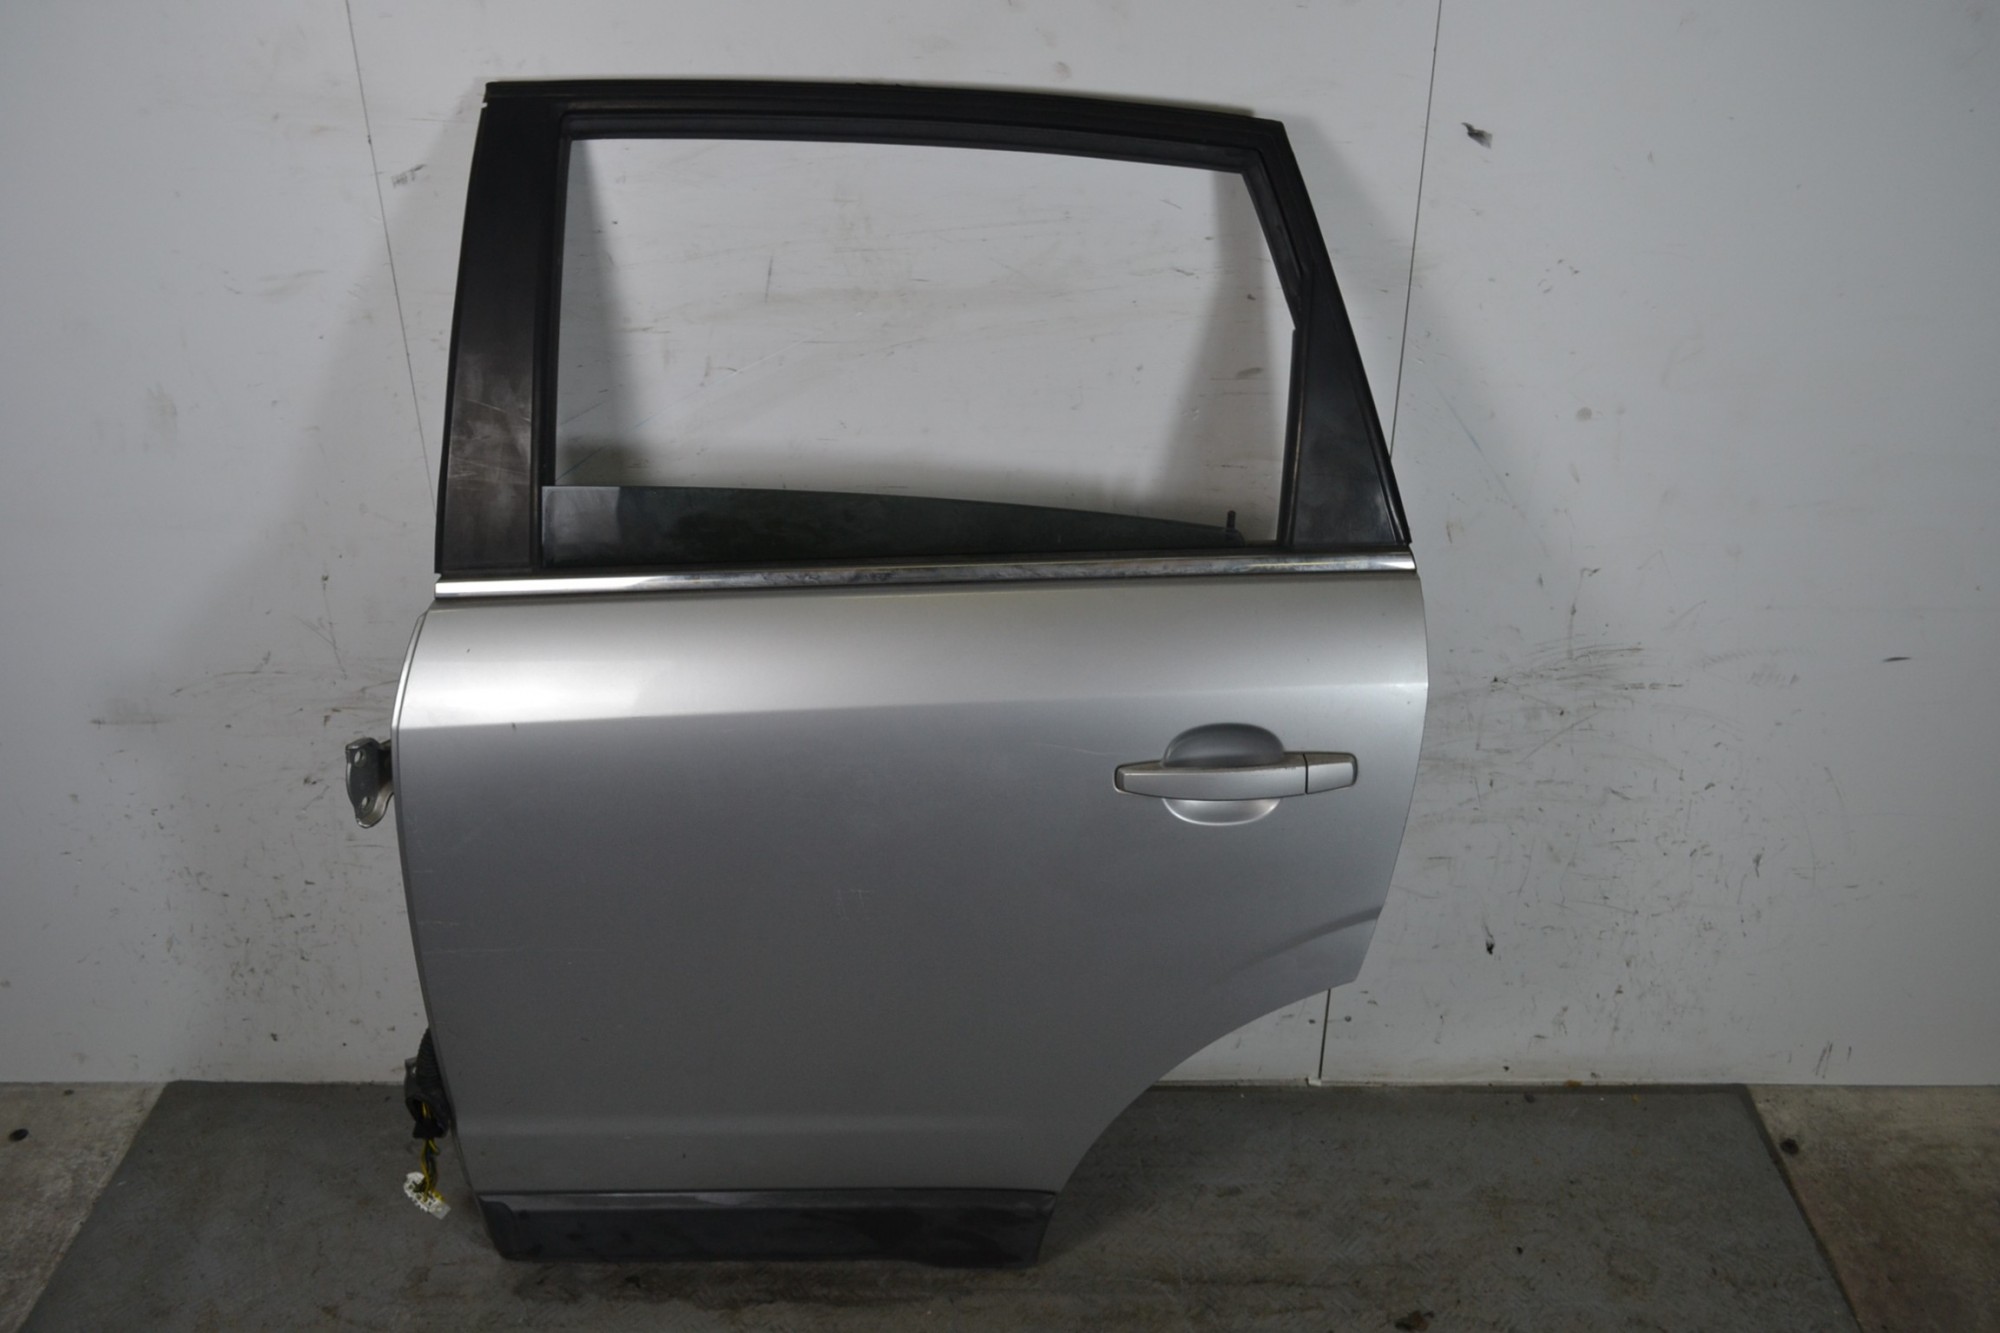 Portiera sportello posteriore SX Opel Antara Dal 2006 al 2015 Colore grigio  1648824894437